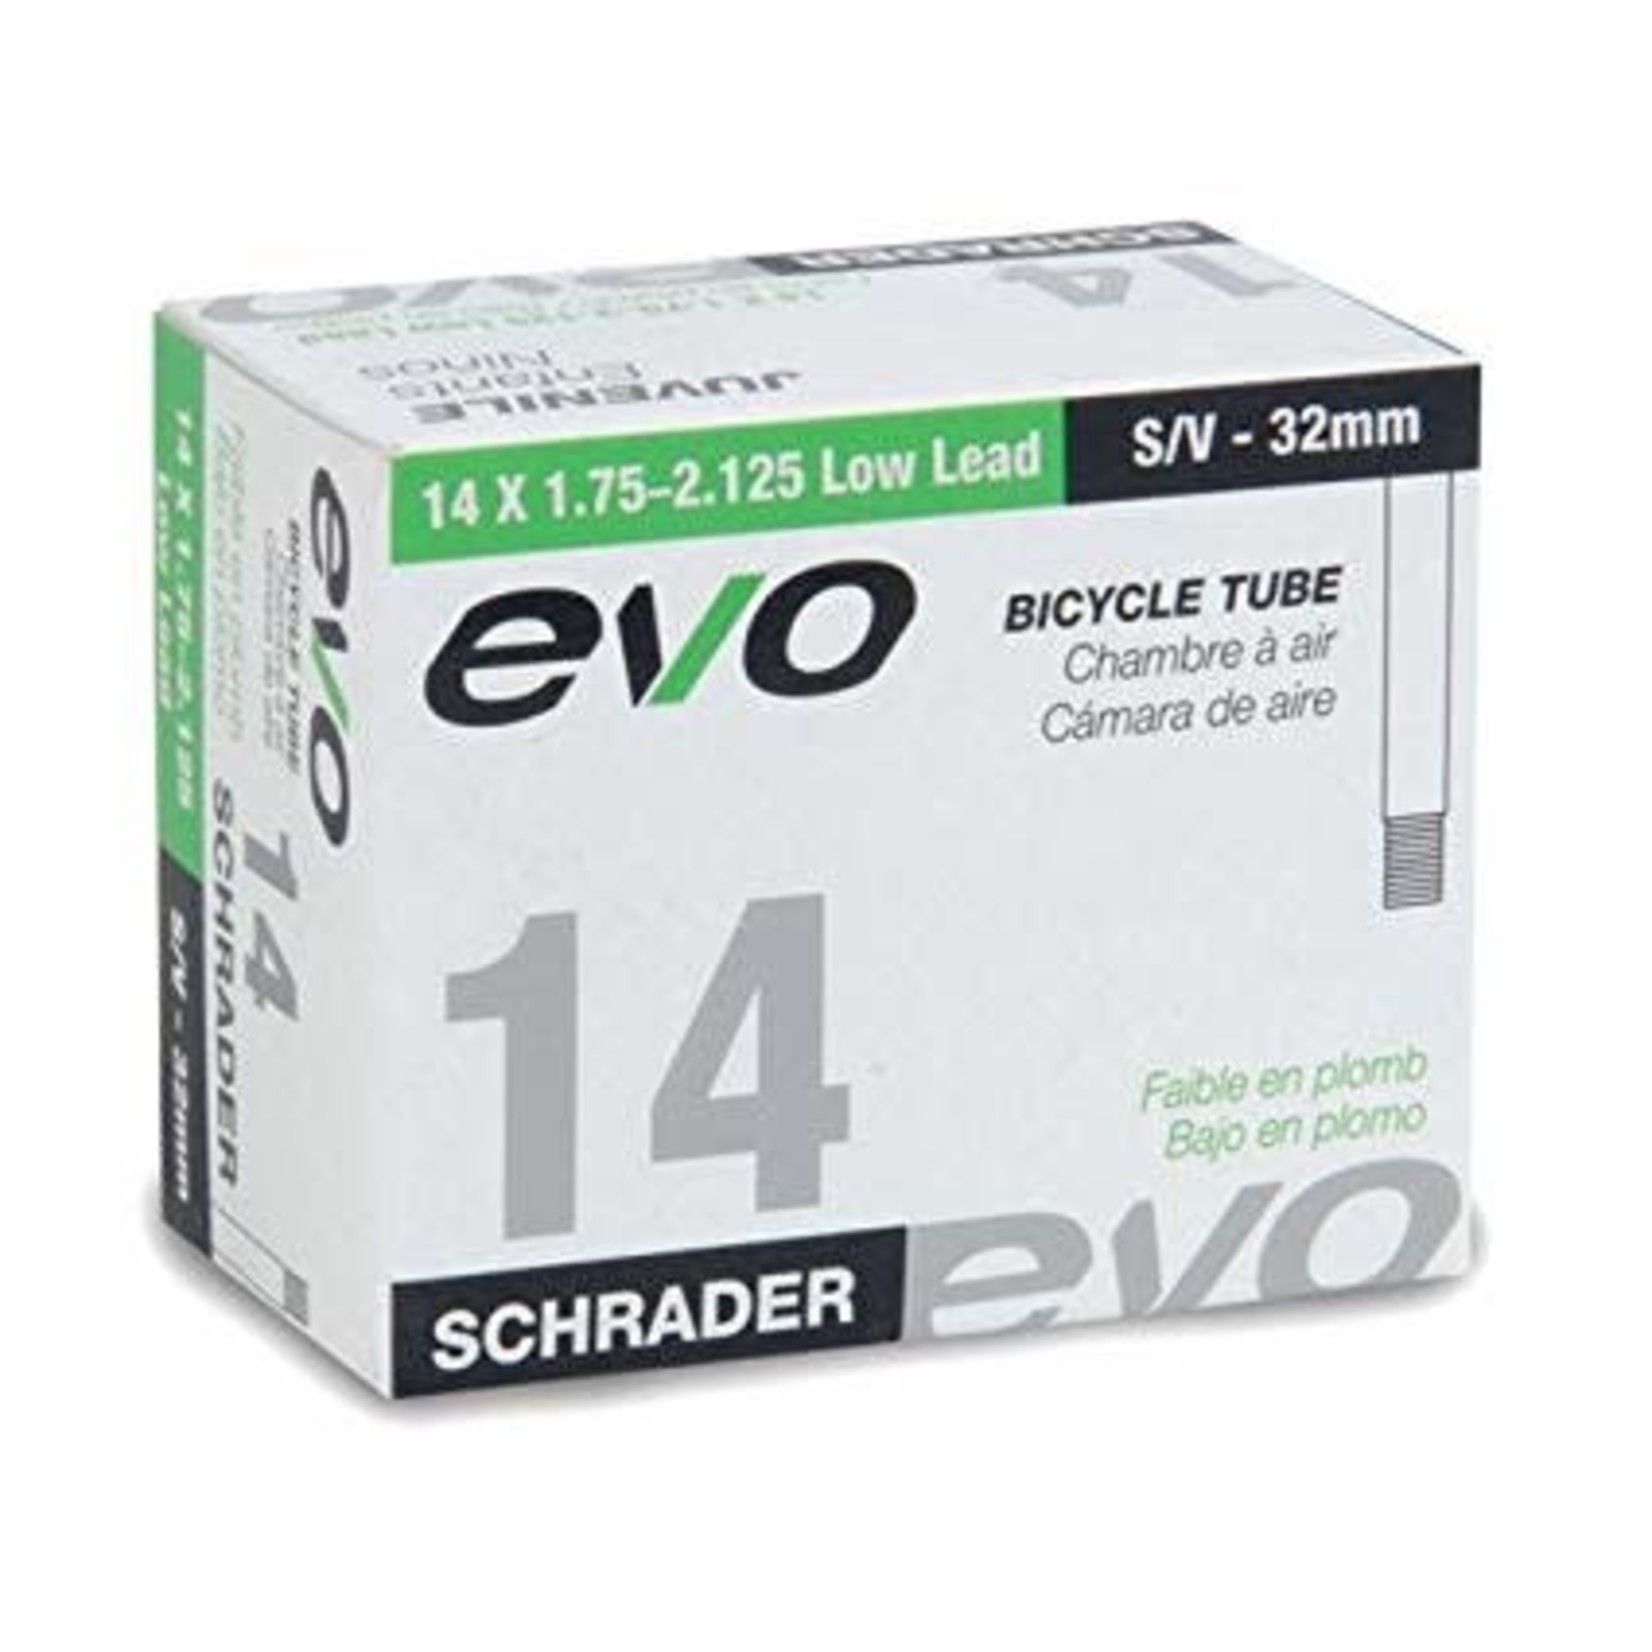 EVO, Inner tube, Schrader, 32mm, 14x1.75-2.125